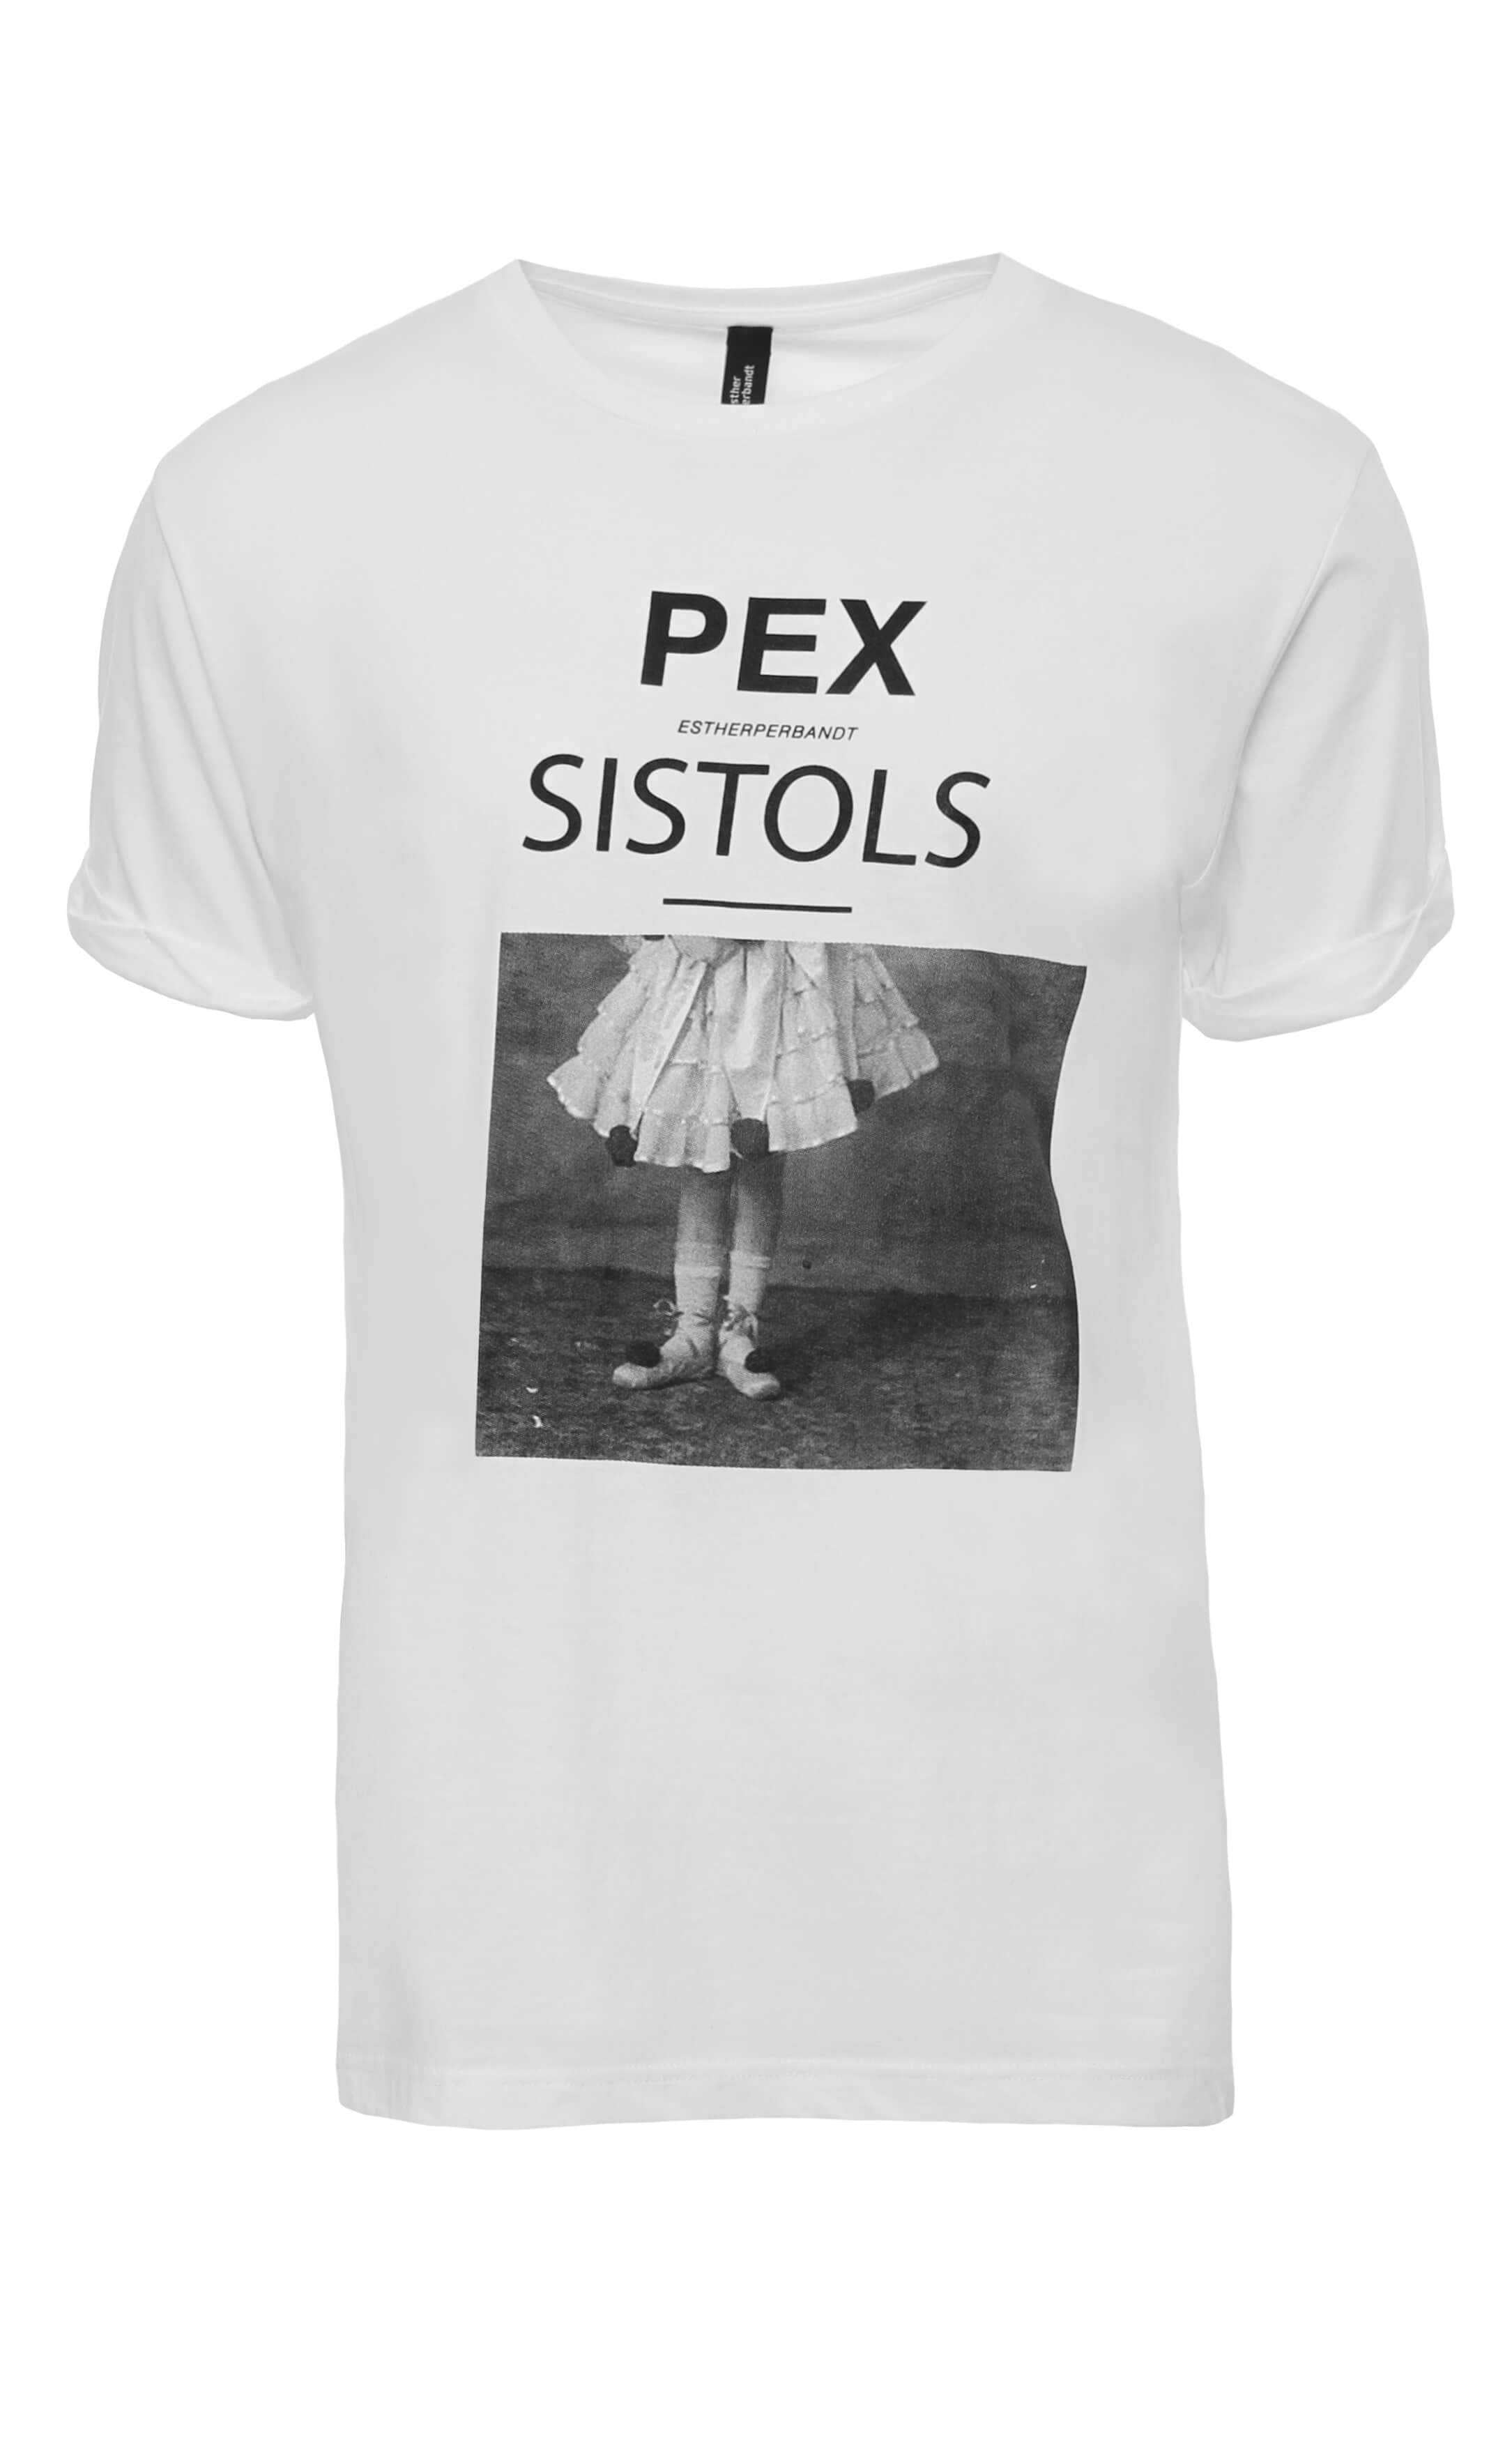 PEX SISTOLS - esther perbandt T-shirt | esther perbandt